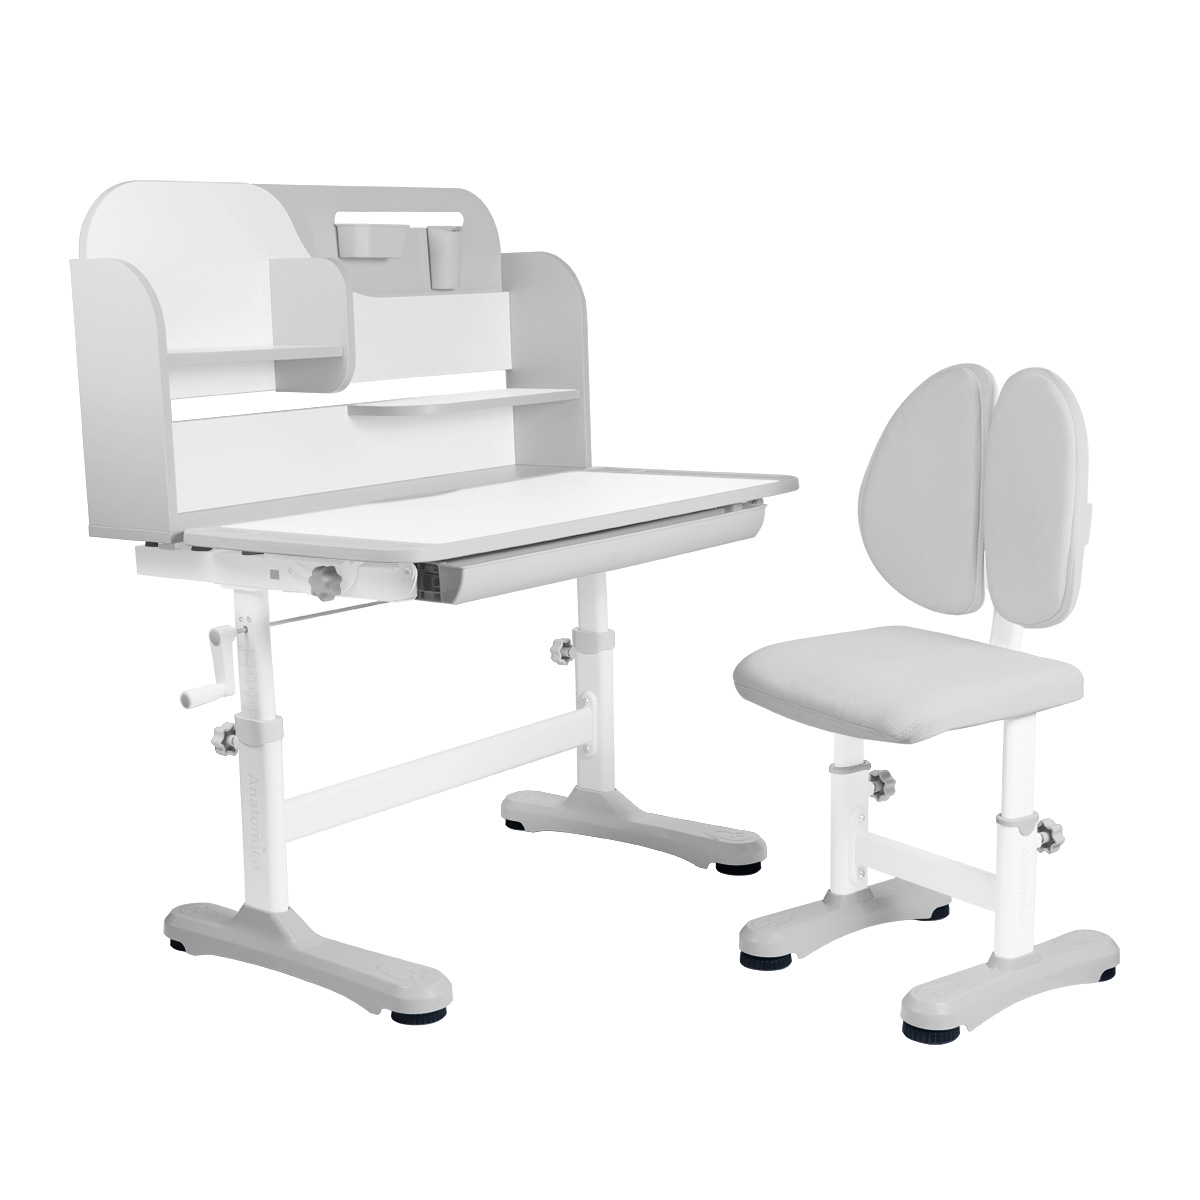 Комплект Anatomica Amadeo парта, стул, надстройка, выдвижной ящик, серый anatomica комплект fiona парта стул надстройка выдвижной ящик